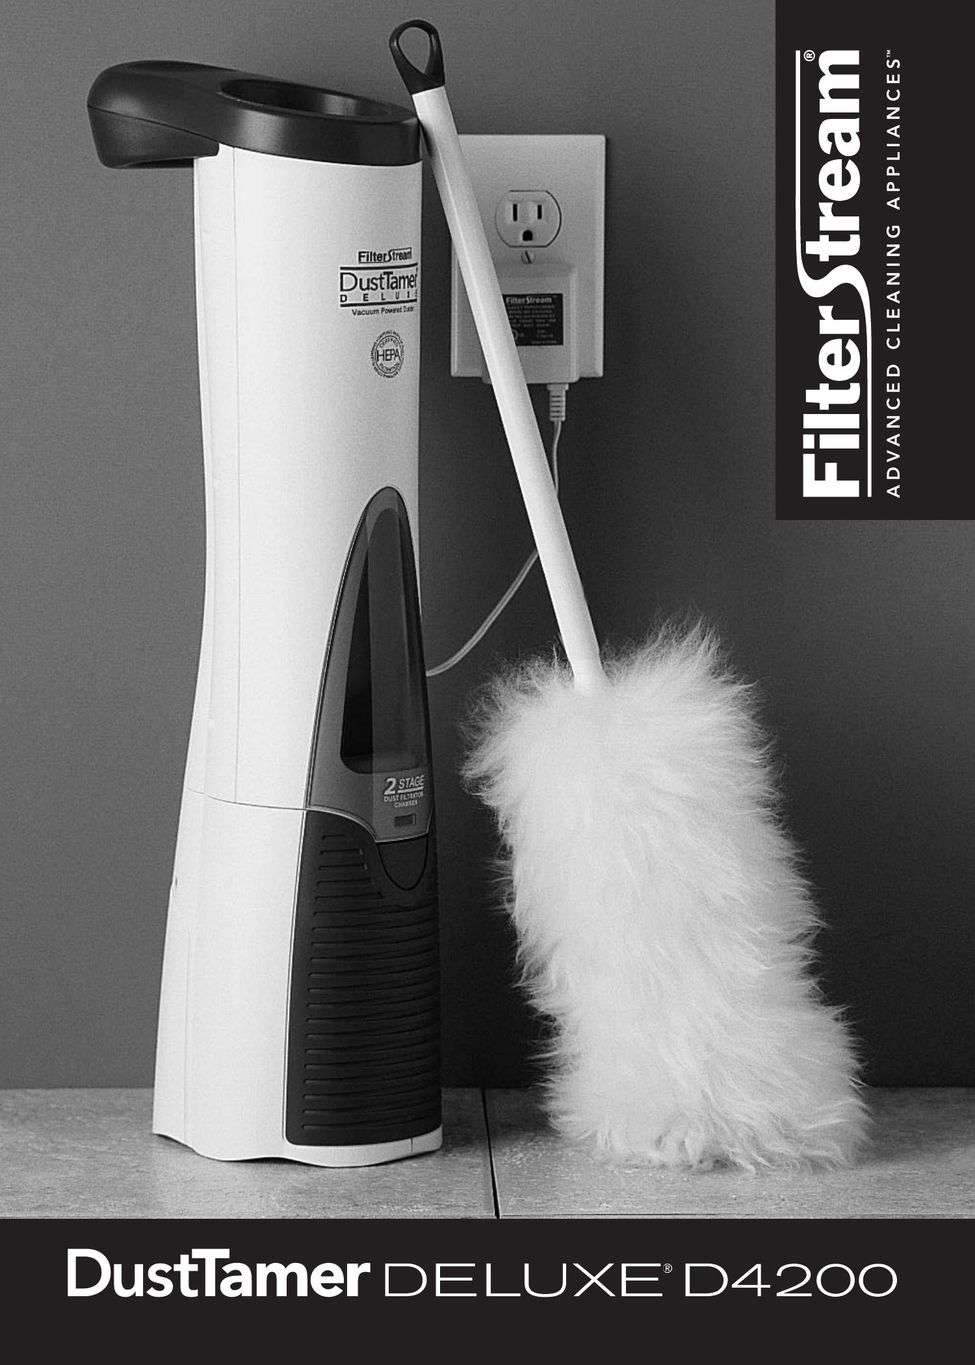 FilterStream D4200 Vacuum Cleaner User Manual